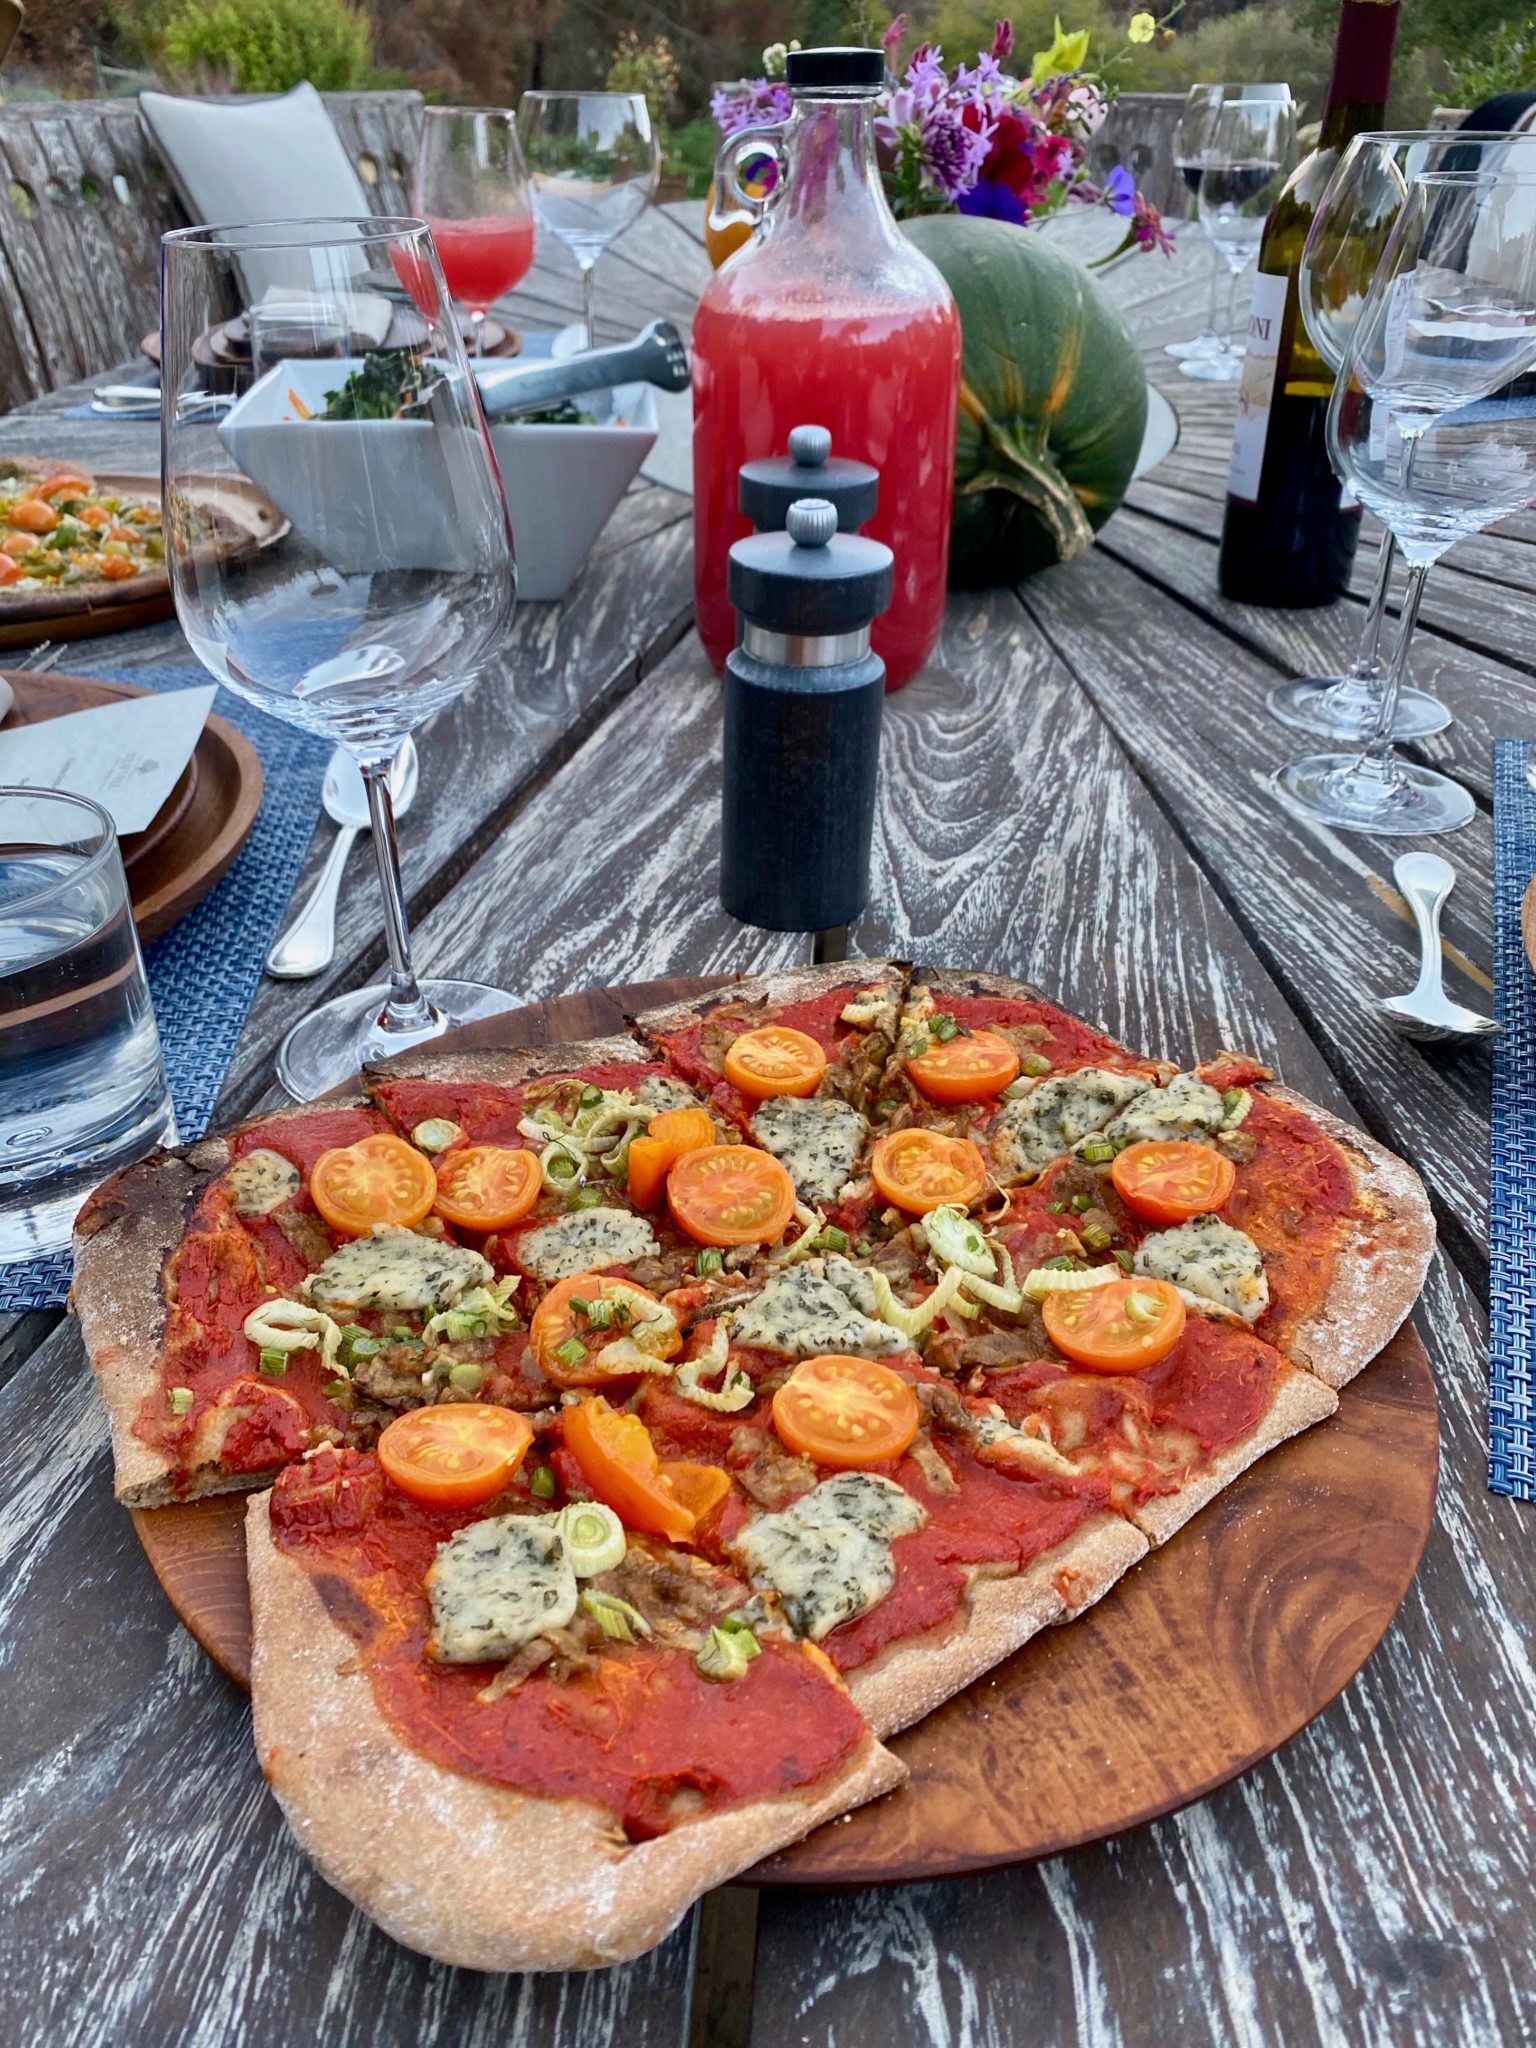 Veggie pizza at NewTree Ranch in Healdsburg. (Jess Lander / Sonoma Magazine)